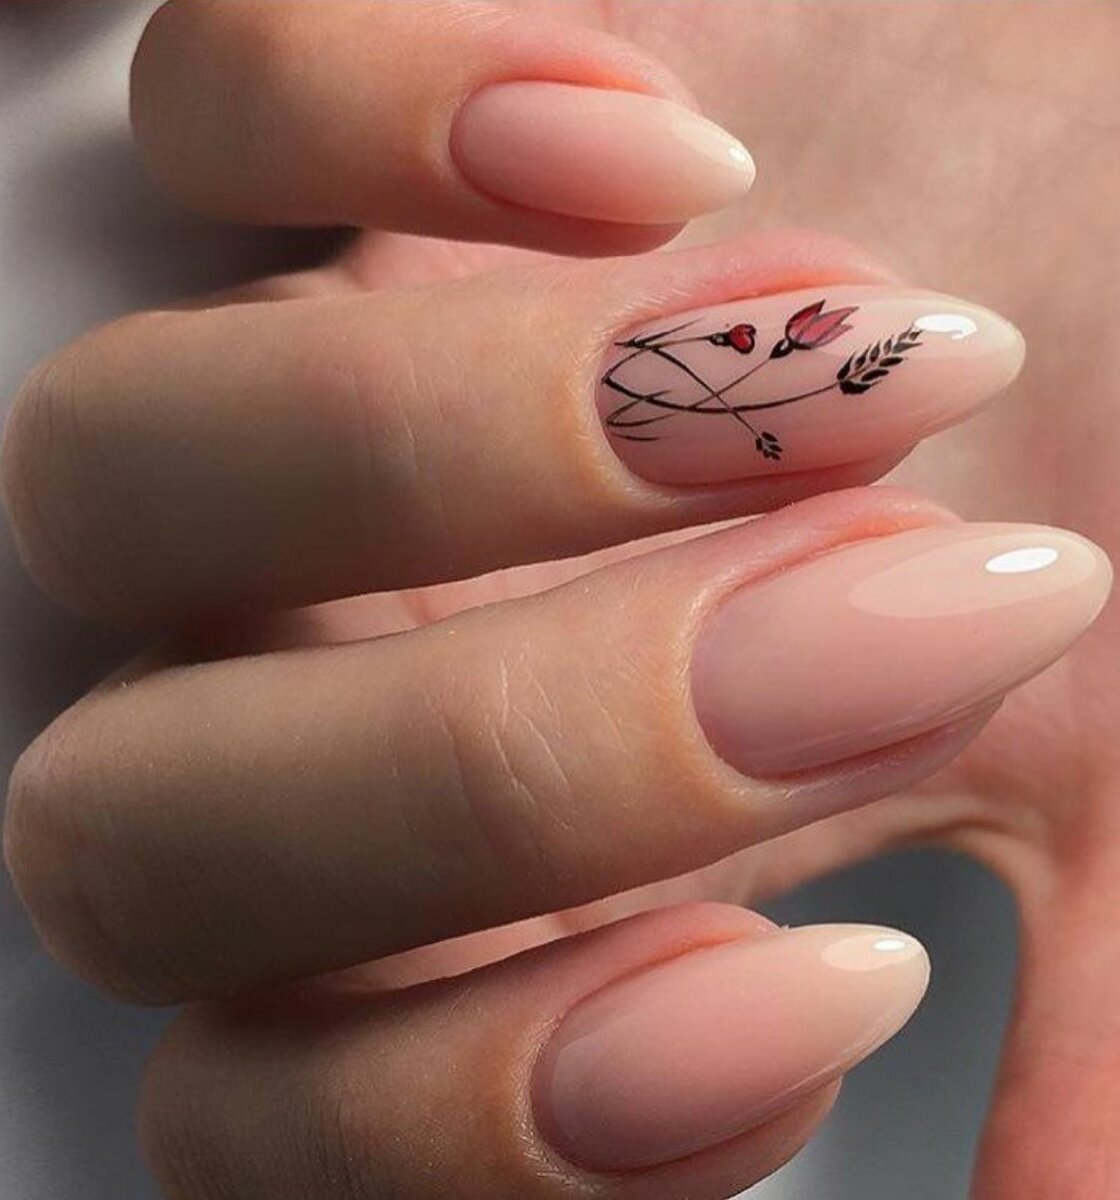 Нежный маникюр 2019 - 190 фото модных ногтей | портал для женщин womanchoice.net